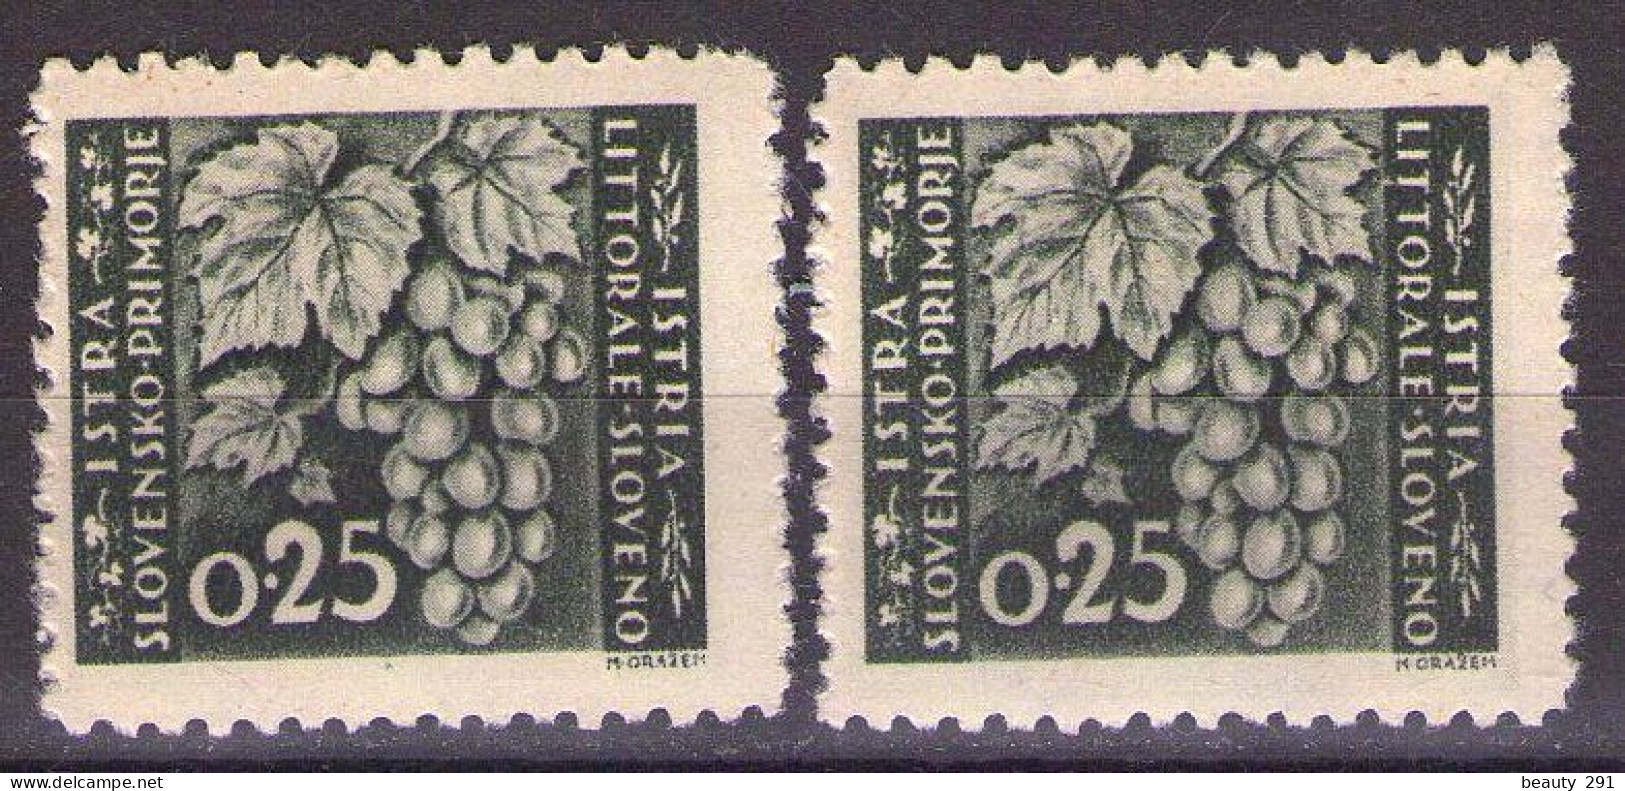 ISTRIA E LITORALE SLOVENO 1945. Tiratura Di Lubiana, Dent. 10 1/2-11 1/2, Sass. 41,TIPO I,II MH* - Yugoslavian Occ.: Slovenian Shore